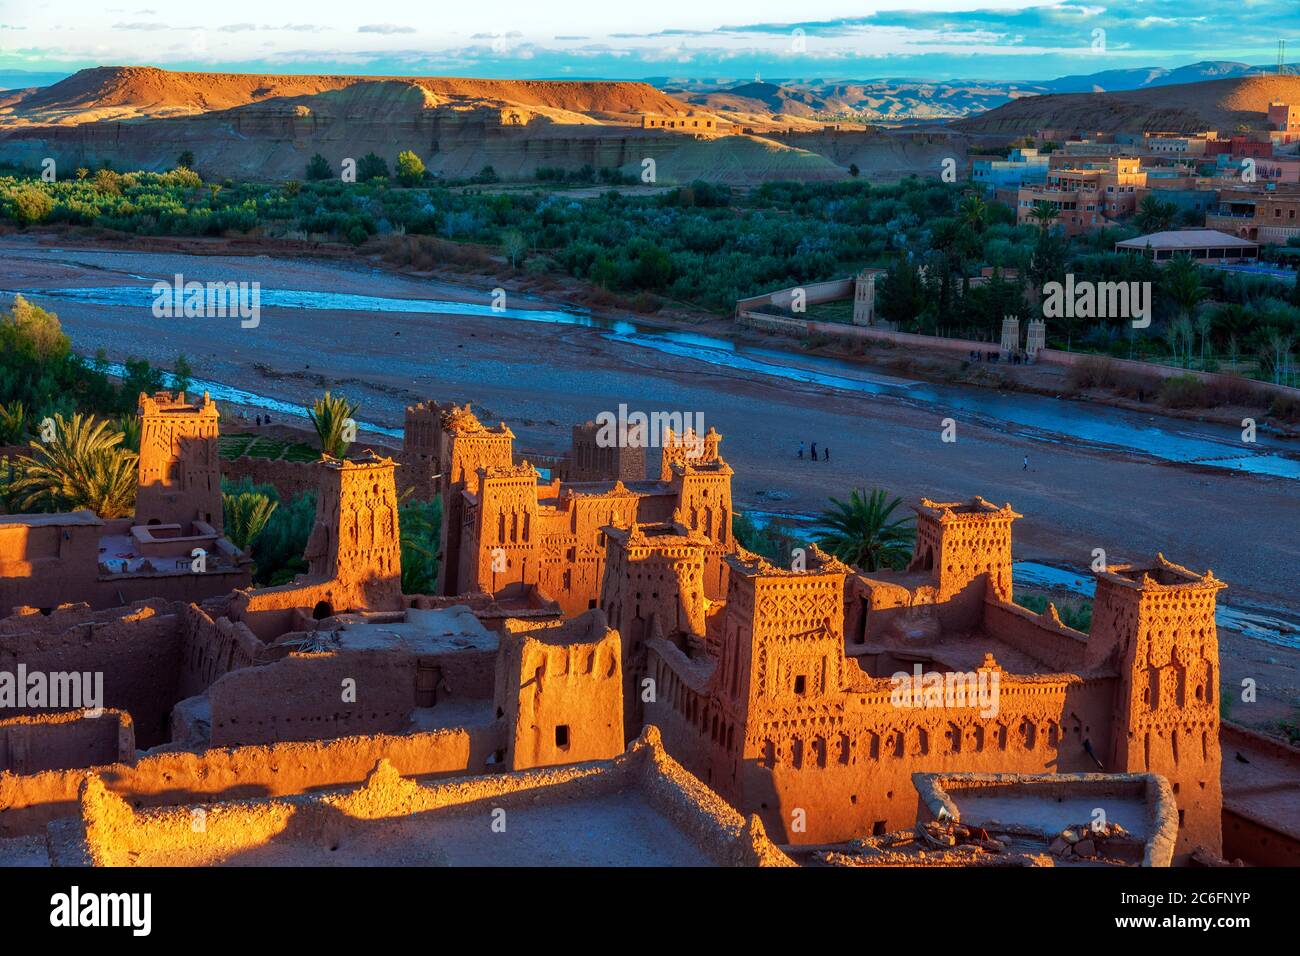 OUARZAZATE PROVINZ, MAROKKO - Ksar in Ait Benhaddou. Diese befestigte Kasbah aus Lehmziegeln ist ein UNESCO-Weltkulturerbe Stockfoto